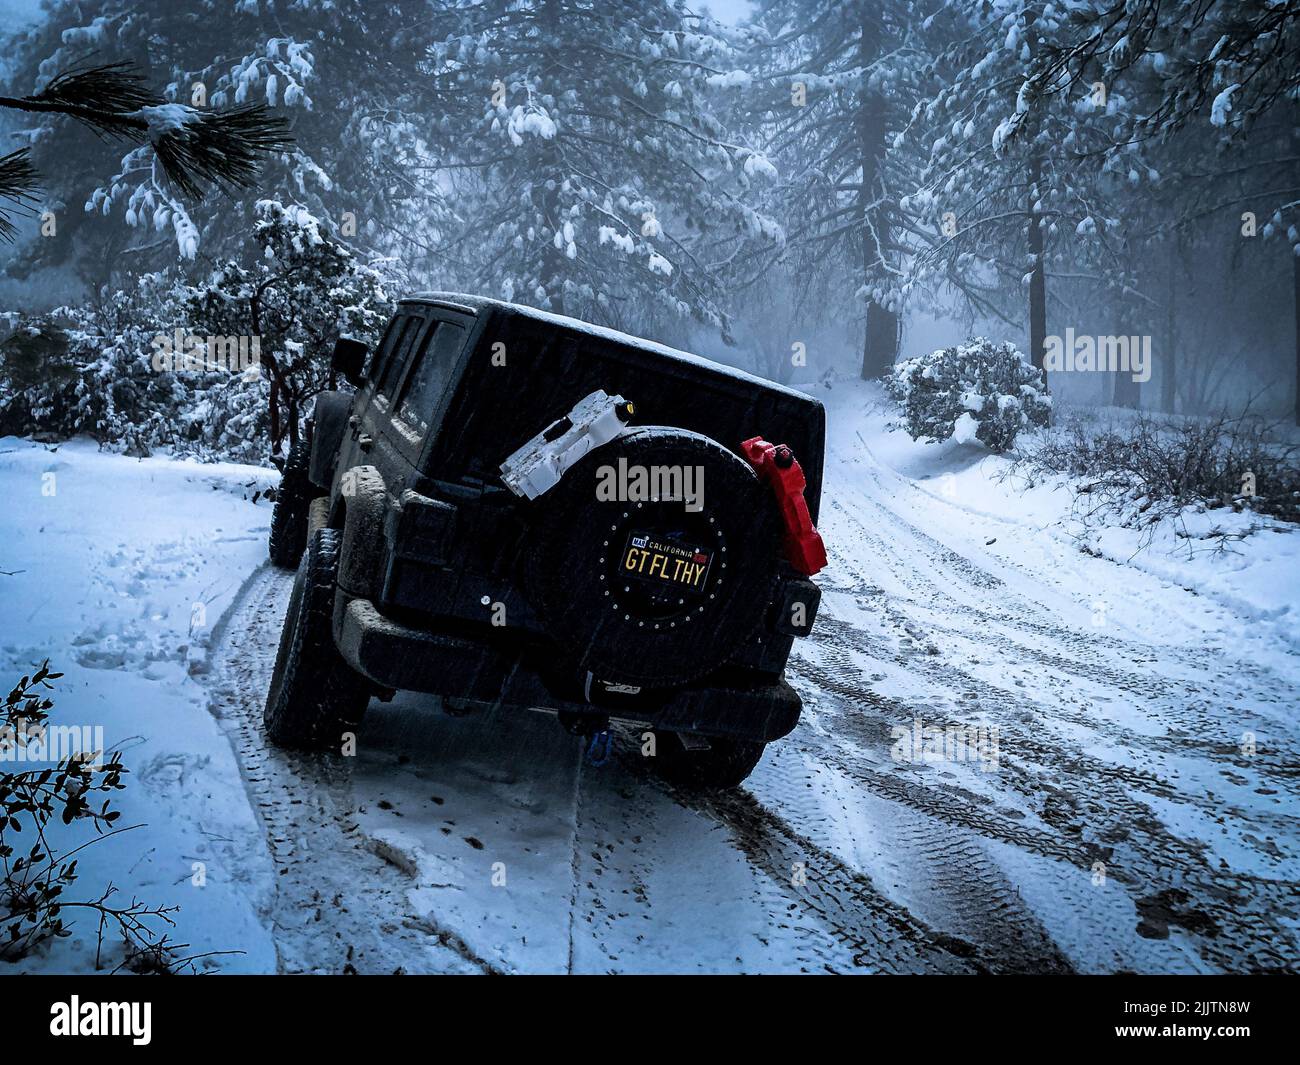 Une Jeep Wrangler noire couverte de neige Photo Stock - Alamy